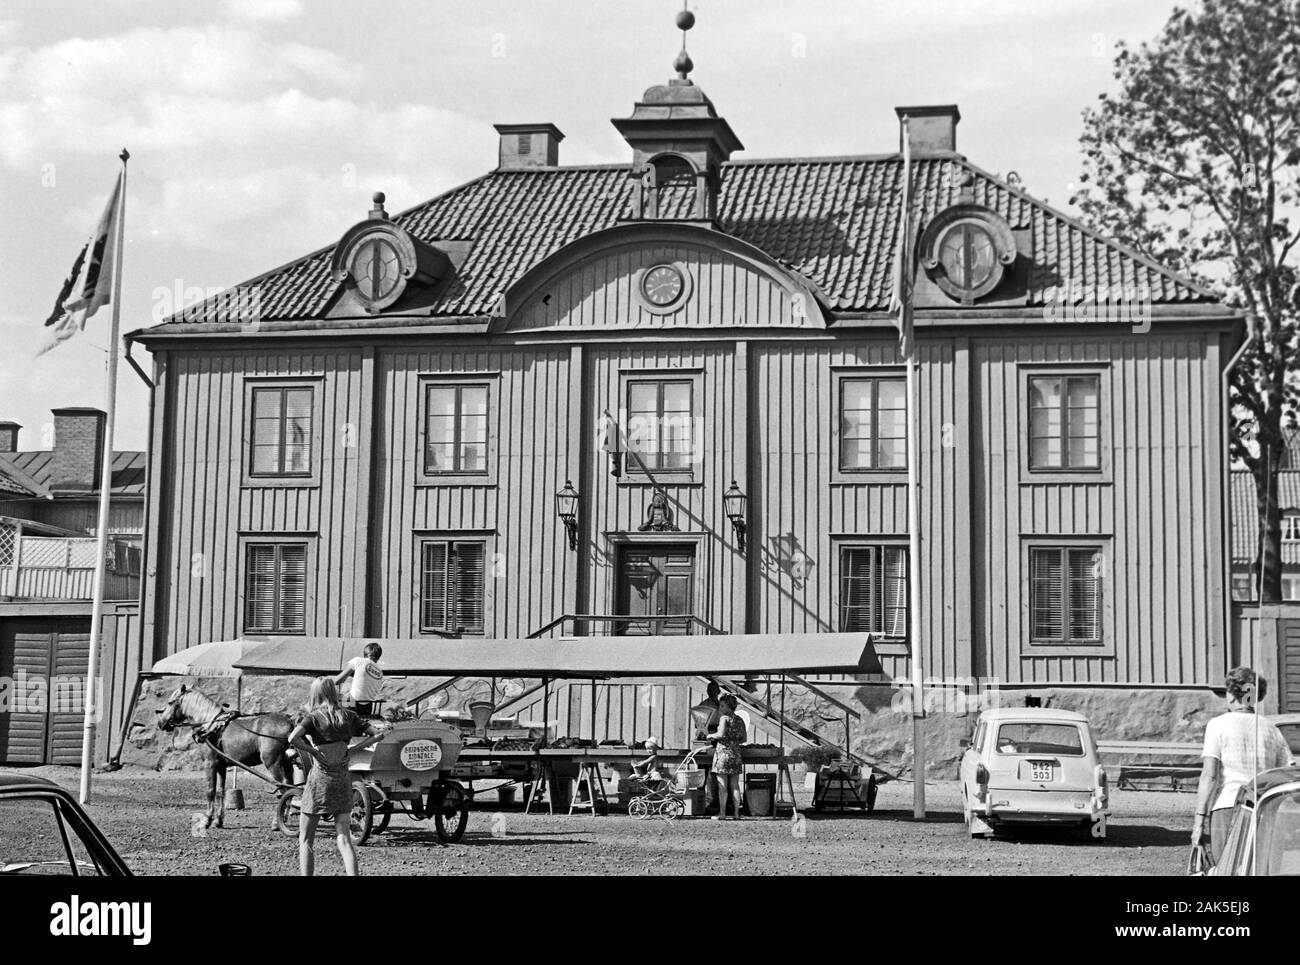 Il Rathaus von Mariefred mit Marktstand und Pferdedroschke, 1969. Municipio di Mariefred con un mercato di stallo e di una carrozza trainata da cavalli, 1969. Foto Stock